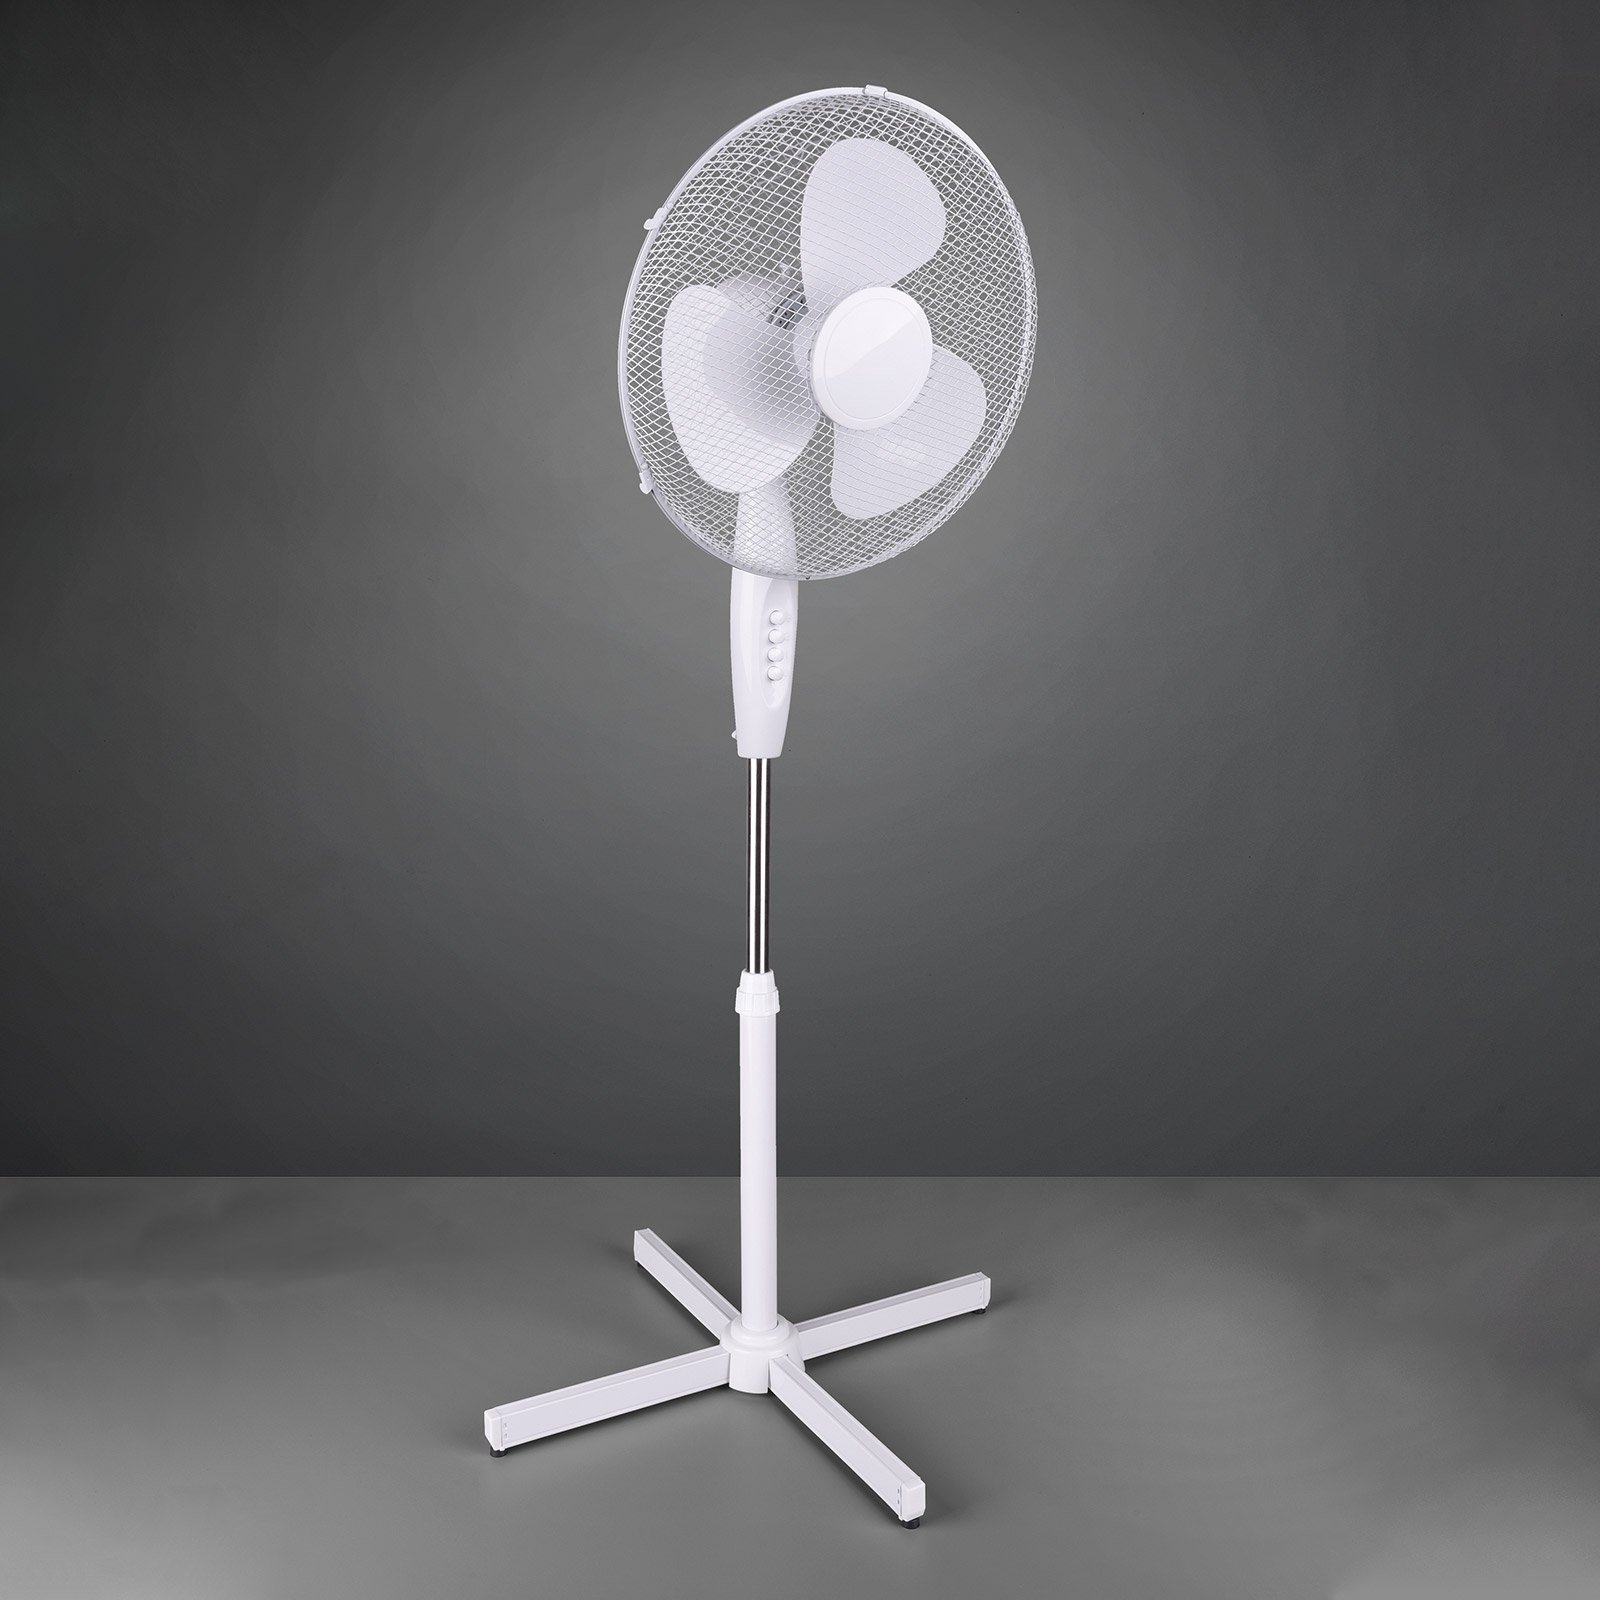 Bergen pedestal fan, height-adjustable, white